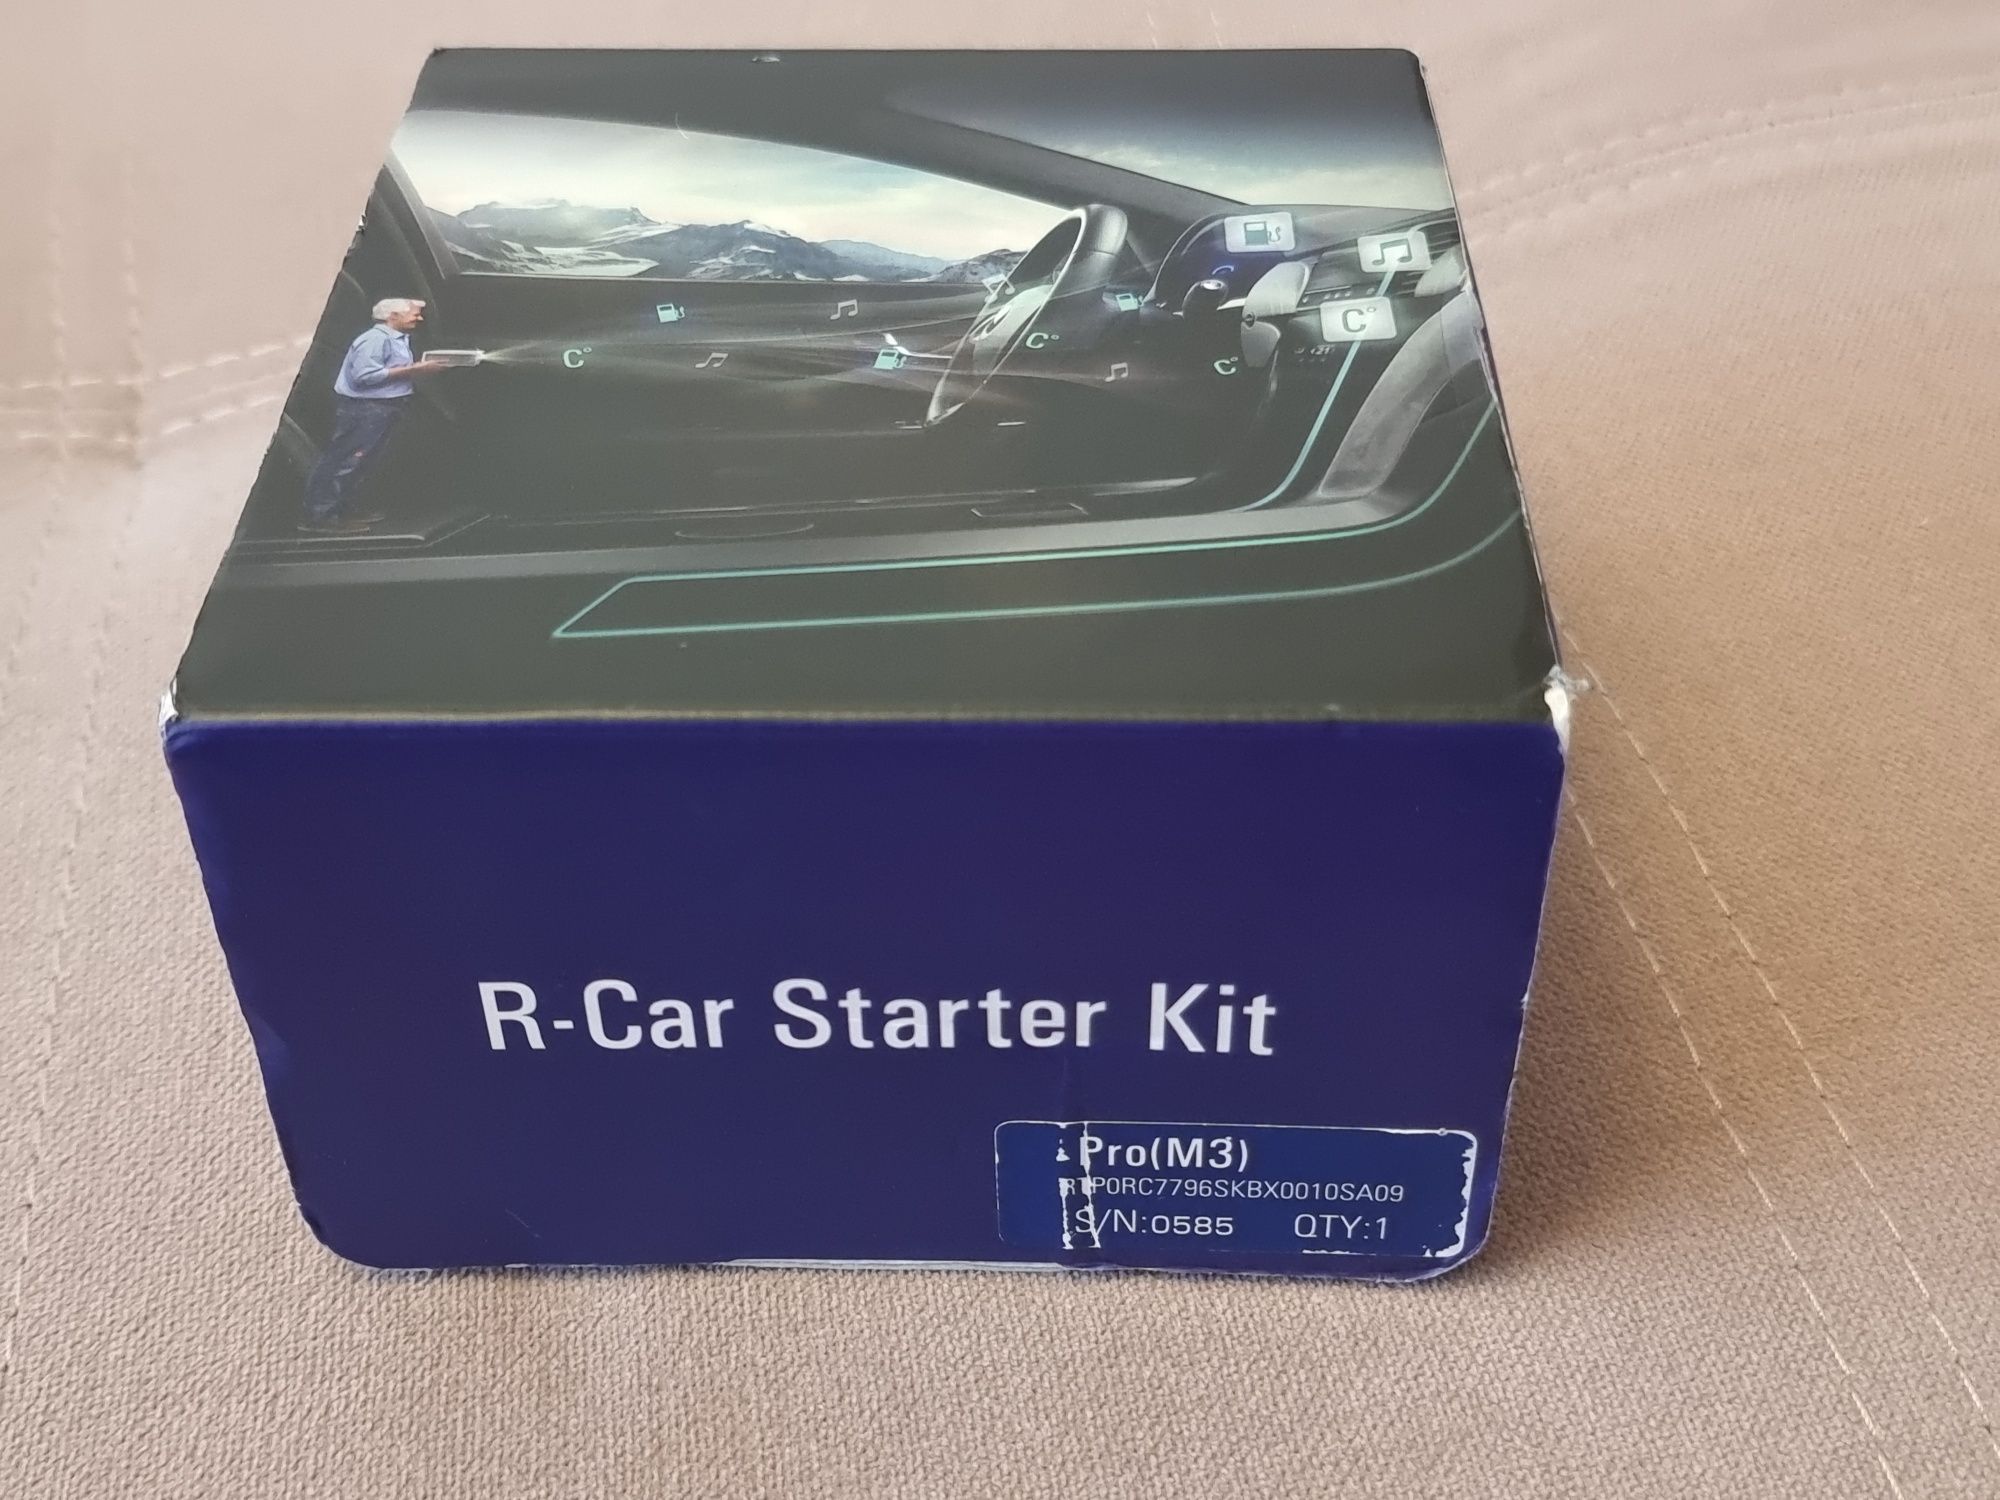 Renesas R-Car Starter kit Pro (m3) made in japan